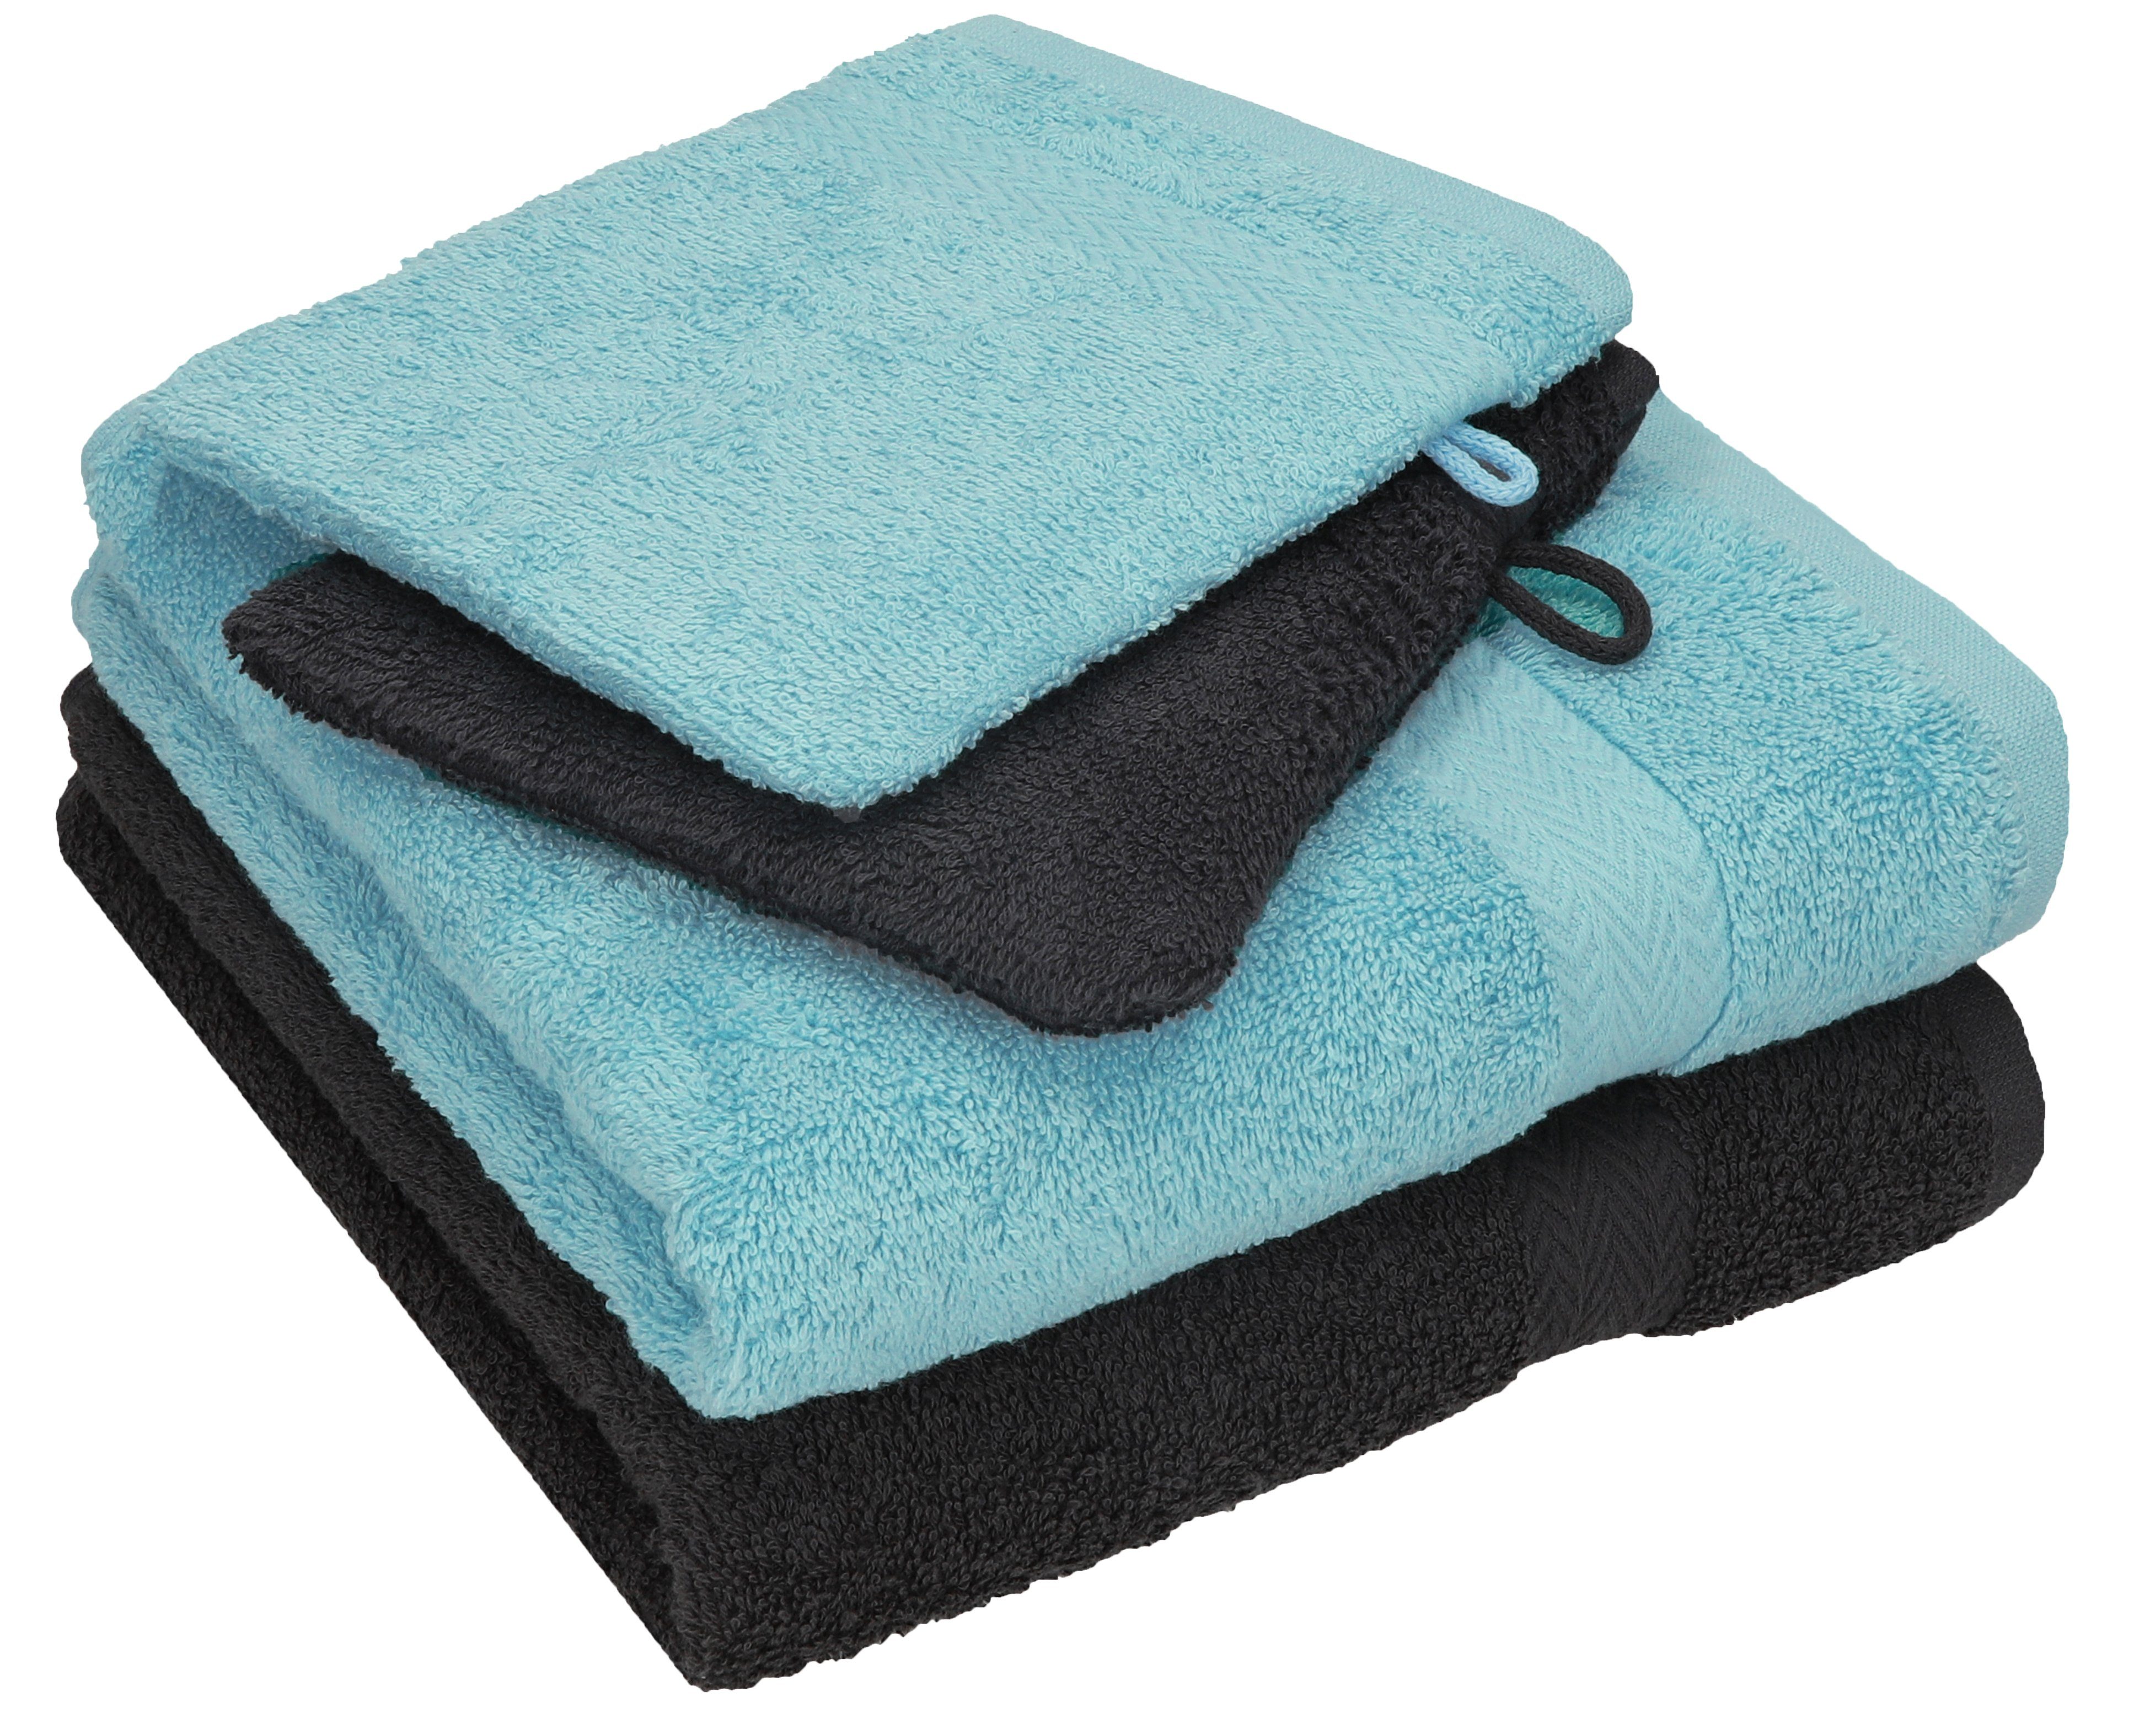 Betz Handtuch Set 4 tlg. Waschhandschuhe, Set graphit 100% 2 grau Handtücher Baumwolle Handtuch 100% HAPPY - 2 ocean Baumwolle Pack